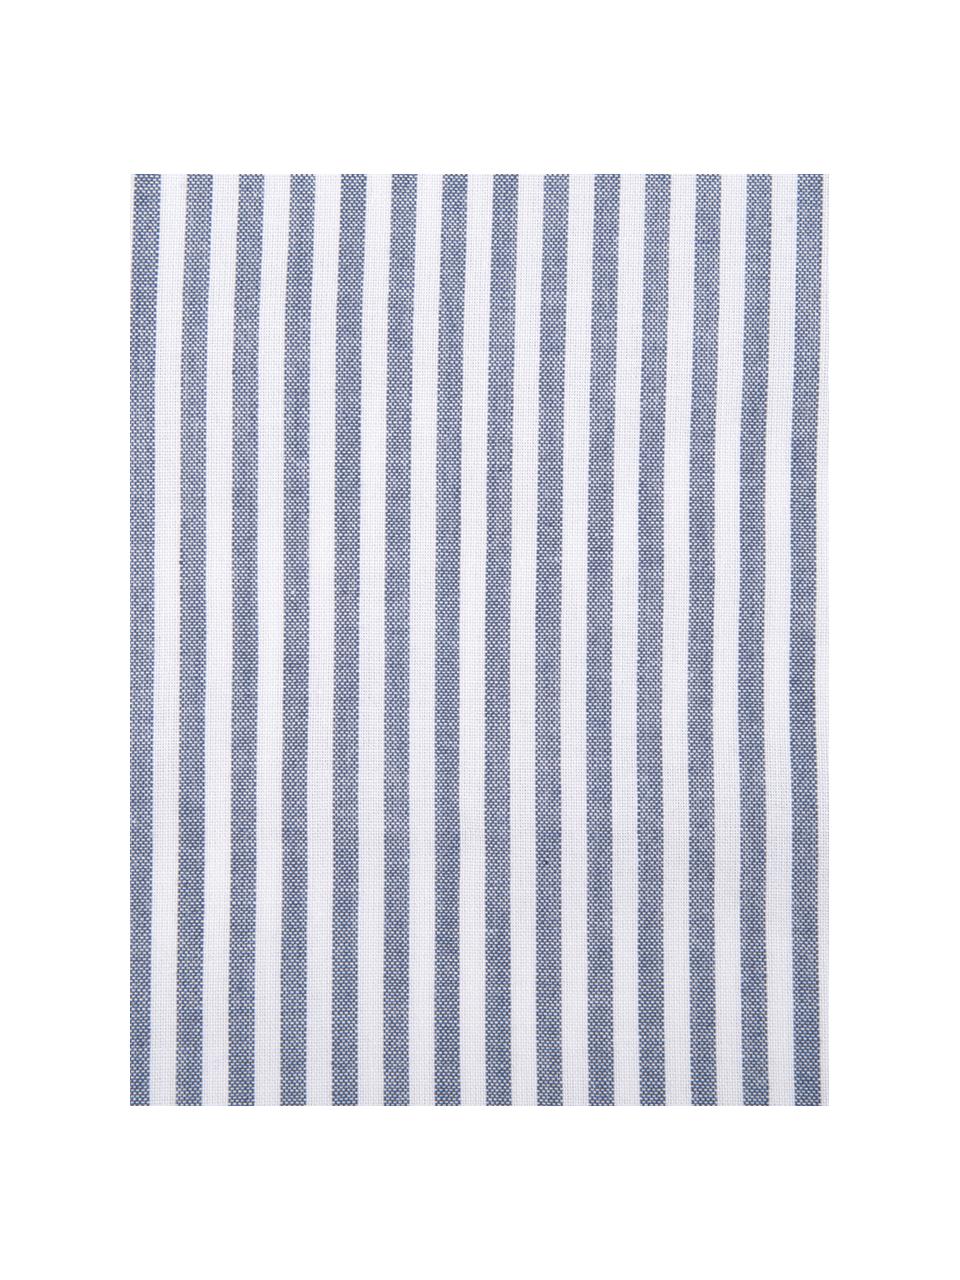 Pościel z bawełny Ellie, Biały, w paski, 155 x 220 cm + 1 poduszka 80 x 80 cm